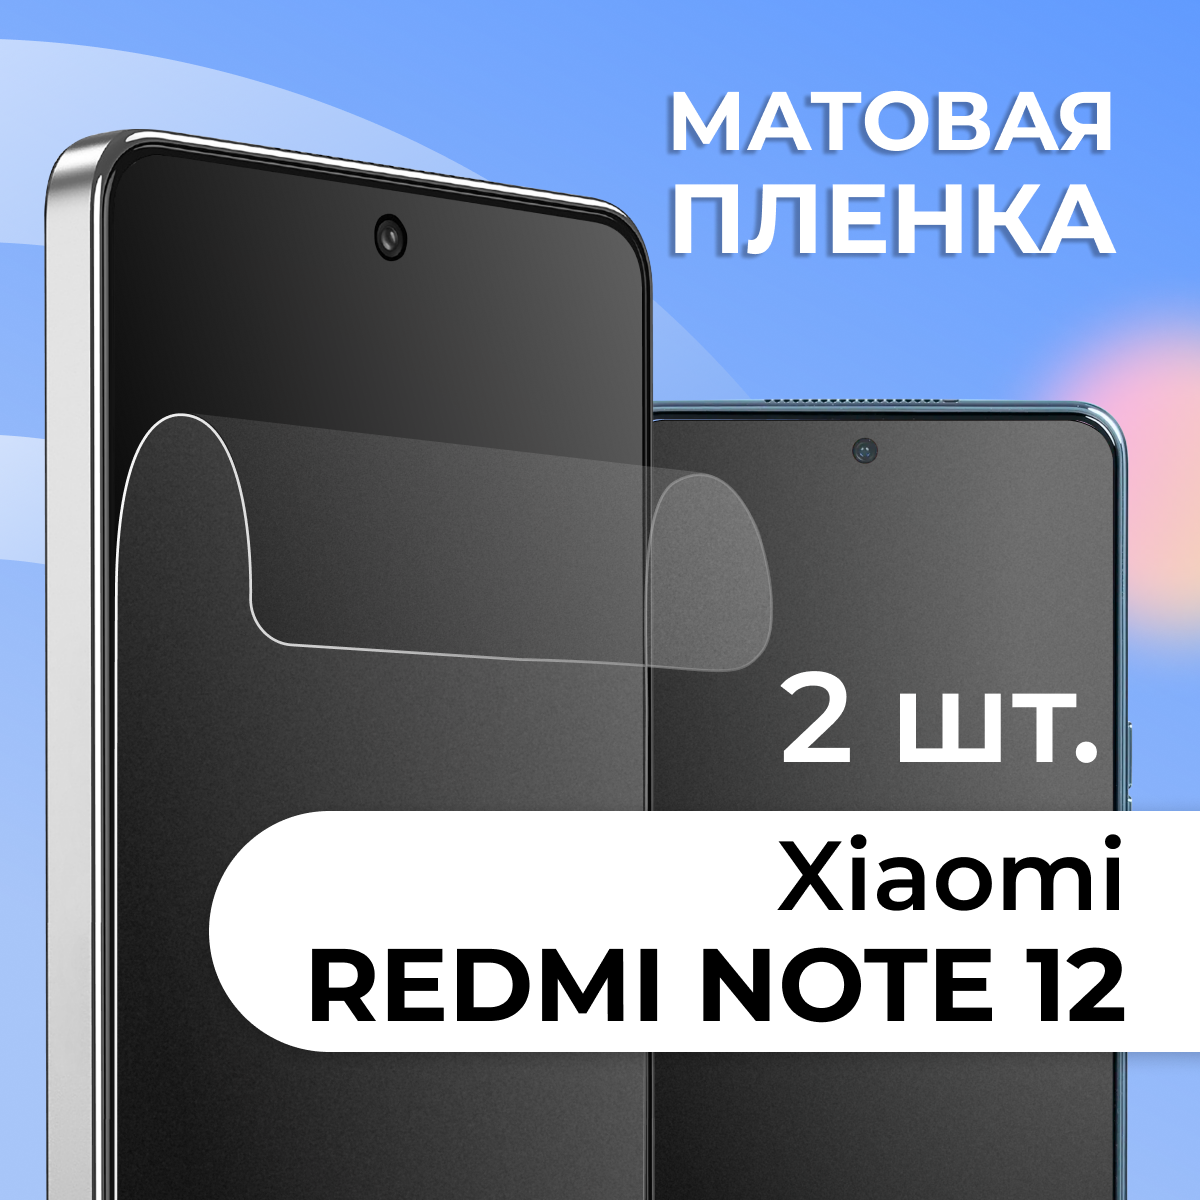 Комплект 2 шт. Матовая защитная пленка для смартфона Xiaomi Redmi Note 12 / Противоударная гидрогелевая пленка с матовым покрытиемна телефон Сяоми Редми Нот 12